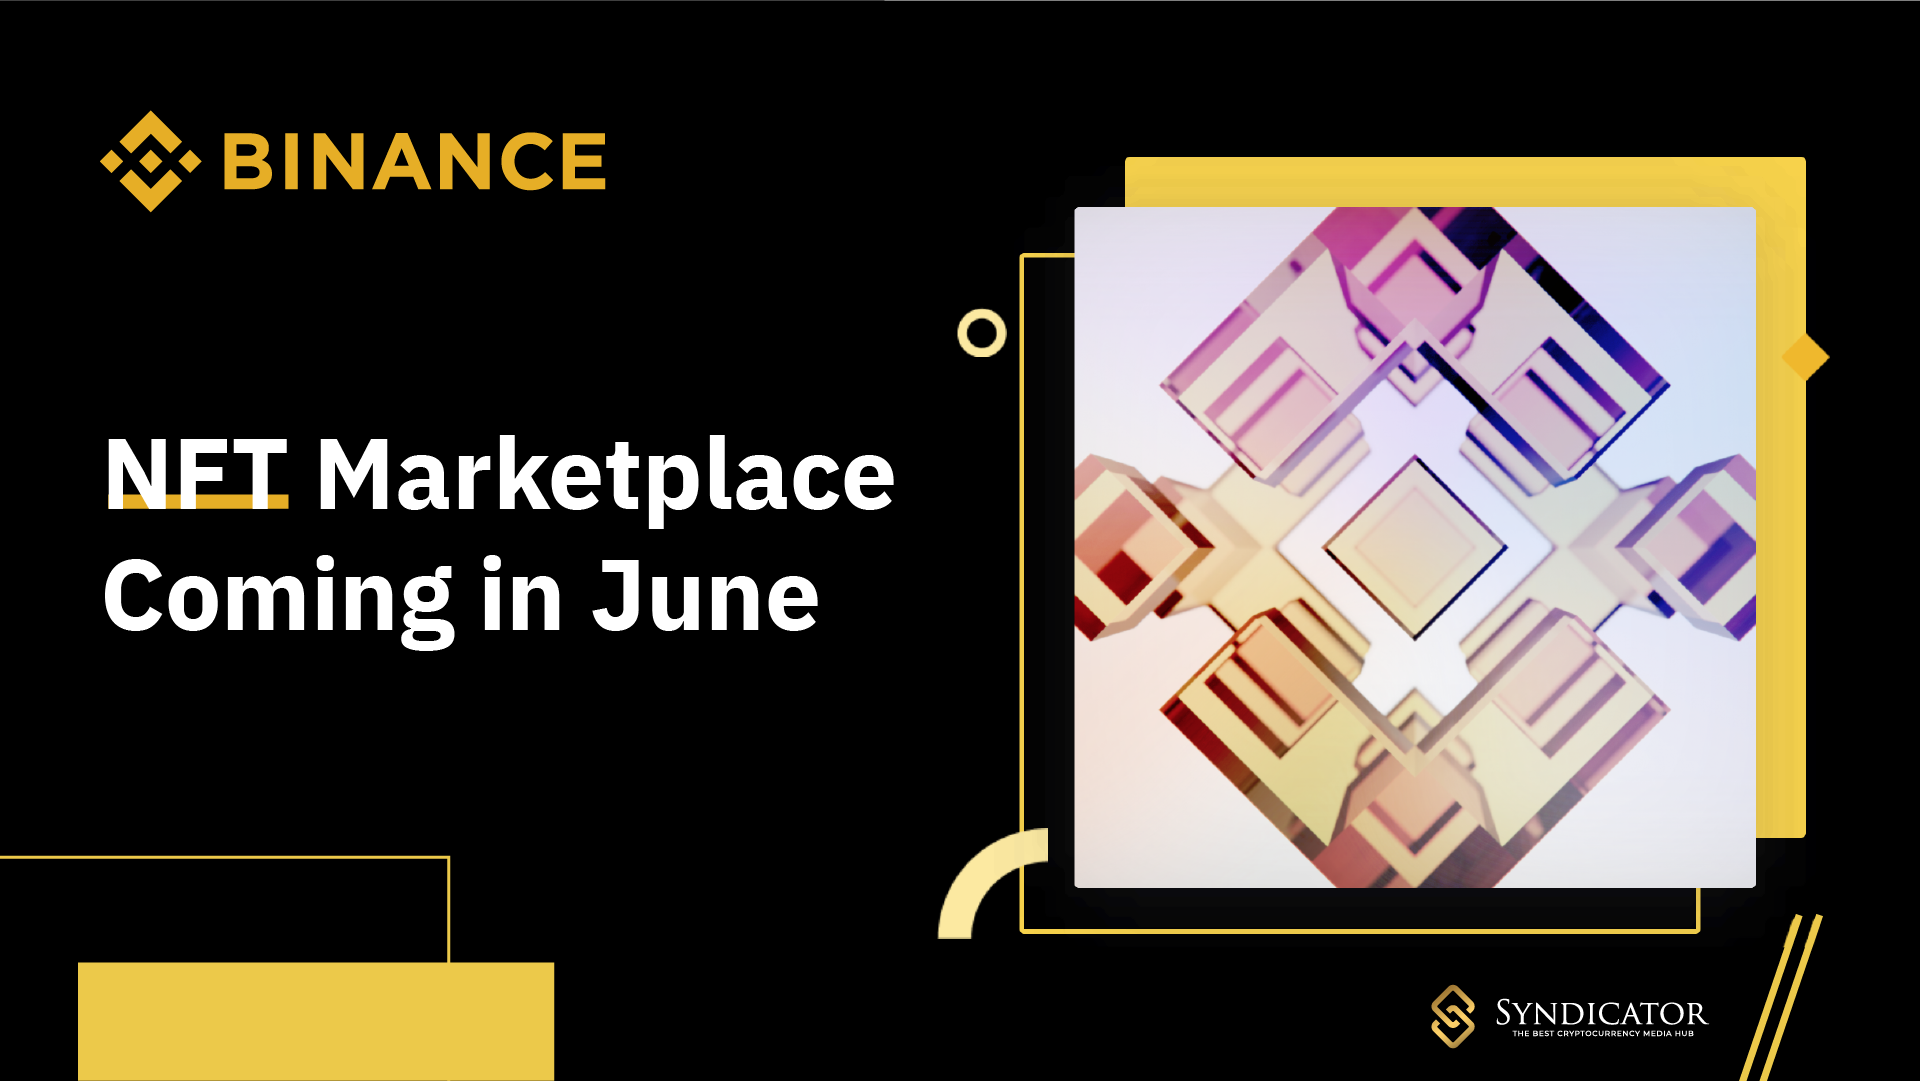 Binance sẽ ra mắt Binance NFT Marketplace vào tháng 6 năm nay. Syndicator